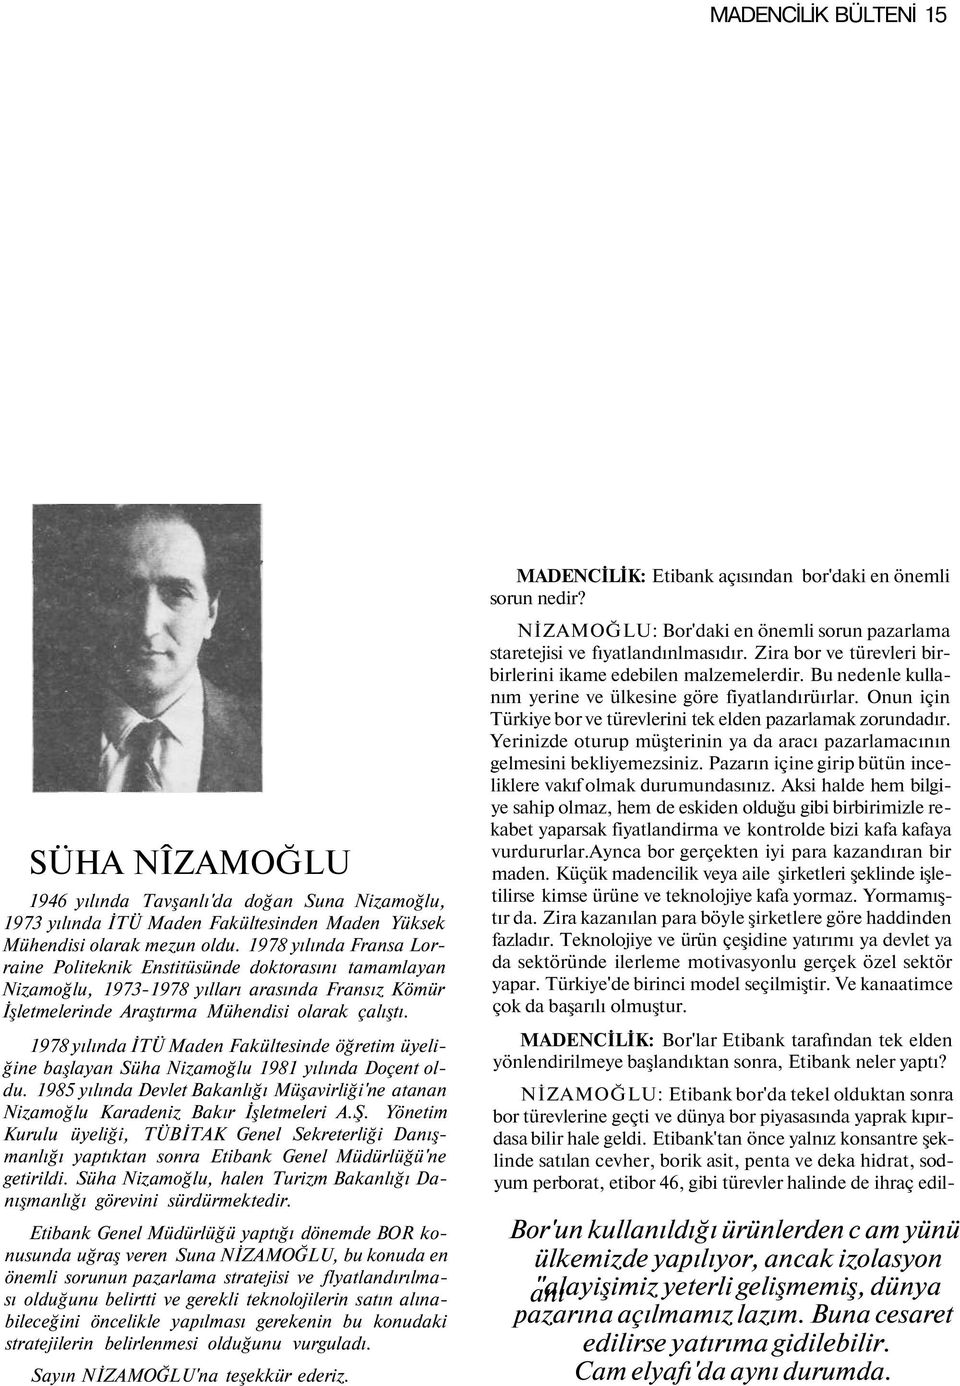 1978 yılında İTÜ Maden Fakültesinde öğretim üyeliğine başlayan Süha Nizamoğlu 1981 yılında Doçent oldu. 1985 yılında Devlet Bakanlığı Müşavirliği'ne atanan Nizamoğlu Karadeniz Bakır İşletmeleri A.Ş.